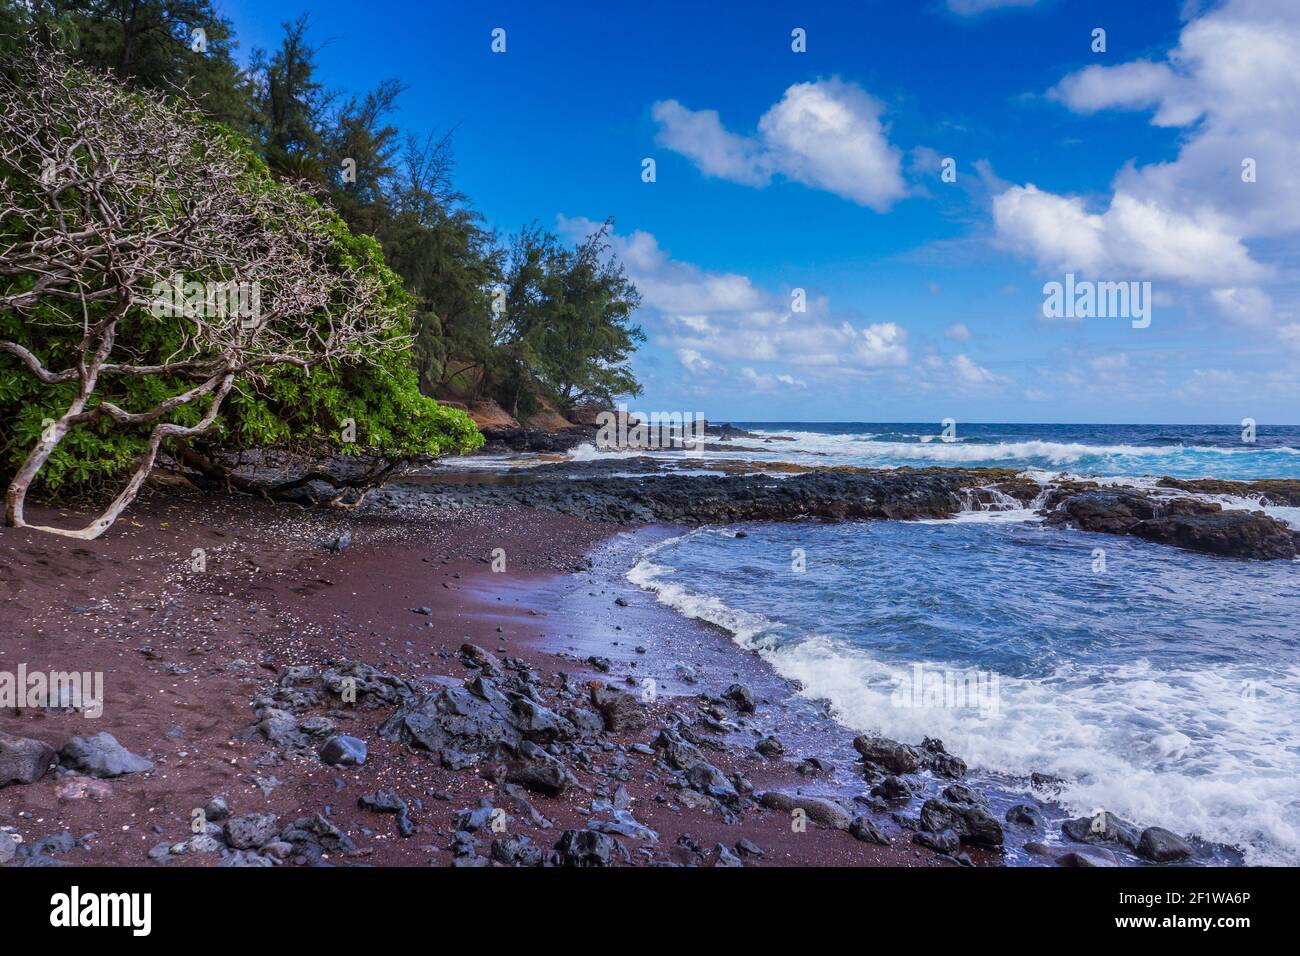 Plage de sable rouge, plage de Kaihalulu, Hana, Maui, Hawaï Banque D'Images